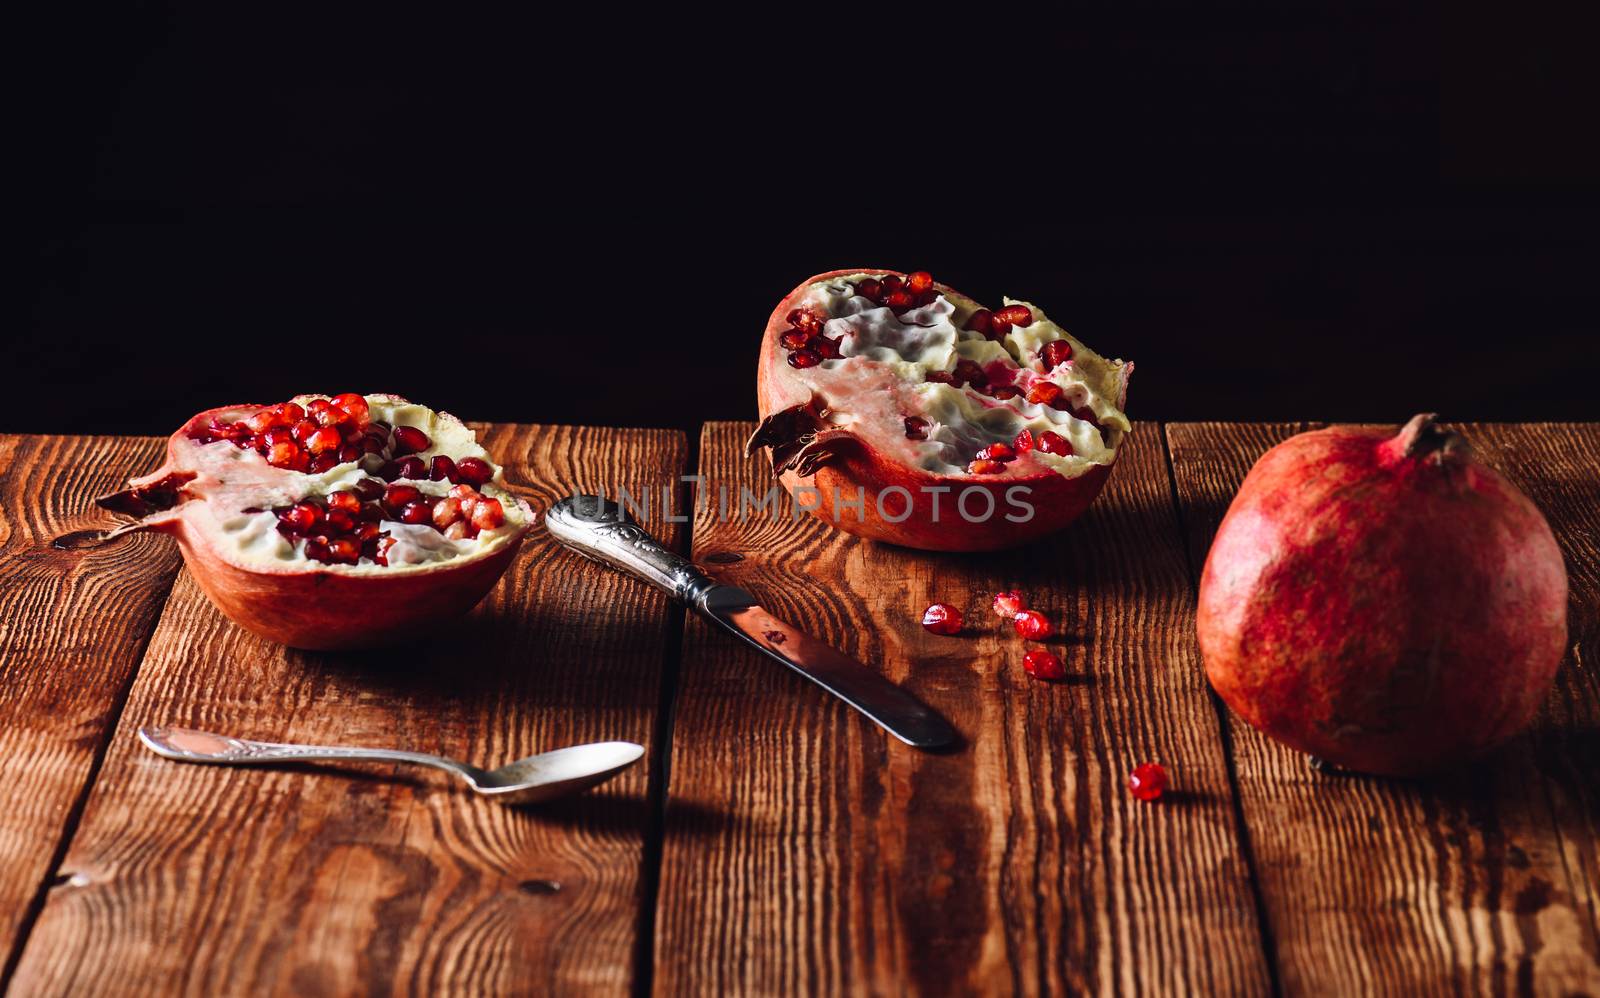 A Freshly Opened Pomegranate Fruit by Seva_blsv